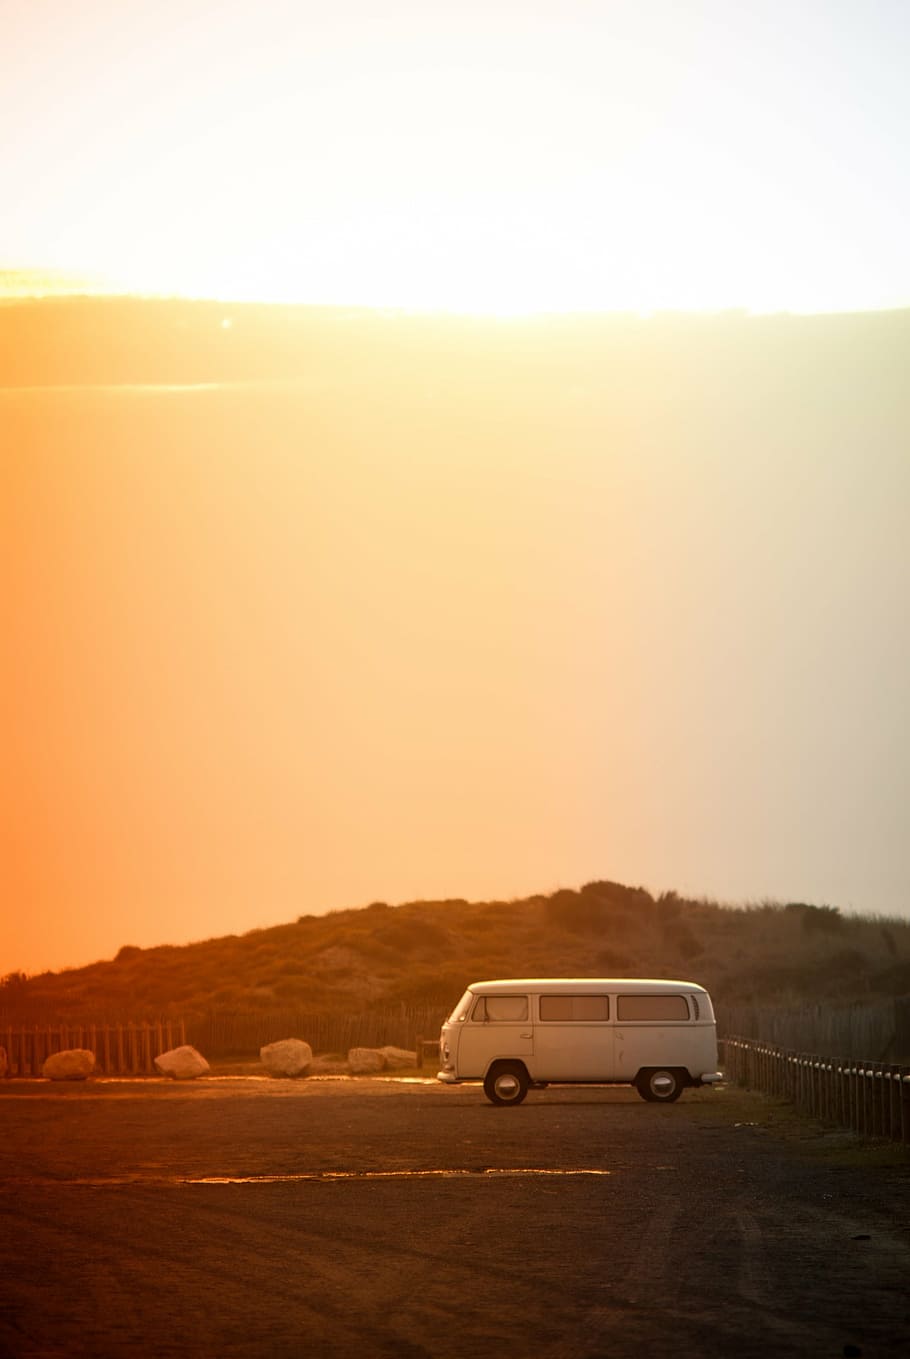 white van under golden hour during daytime, volkswagen, minibus